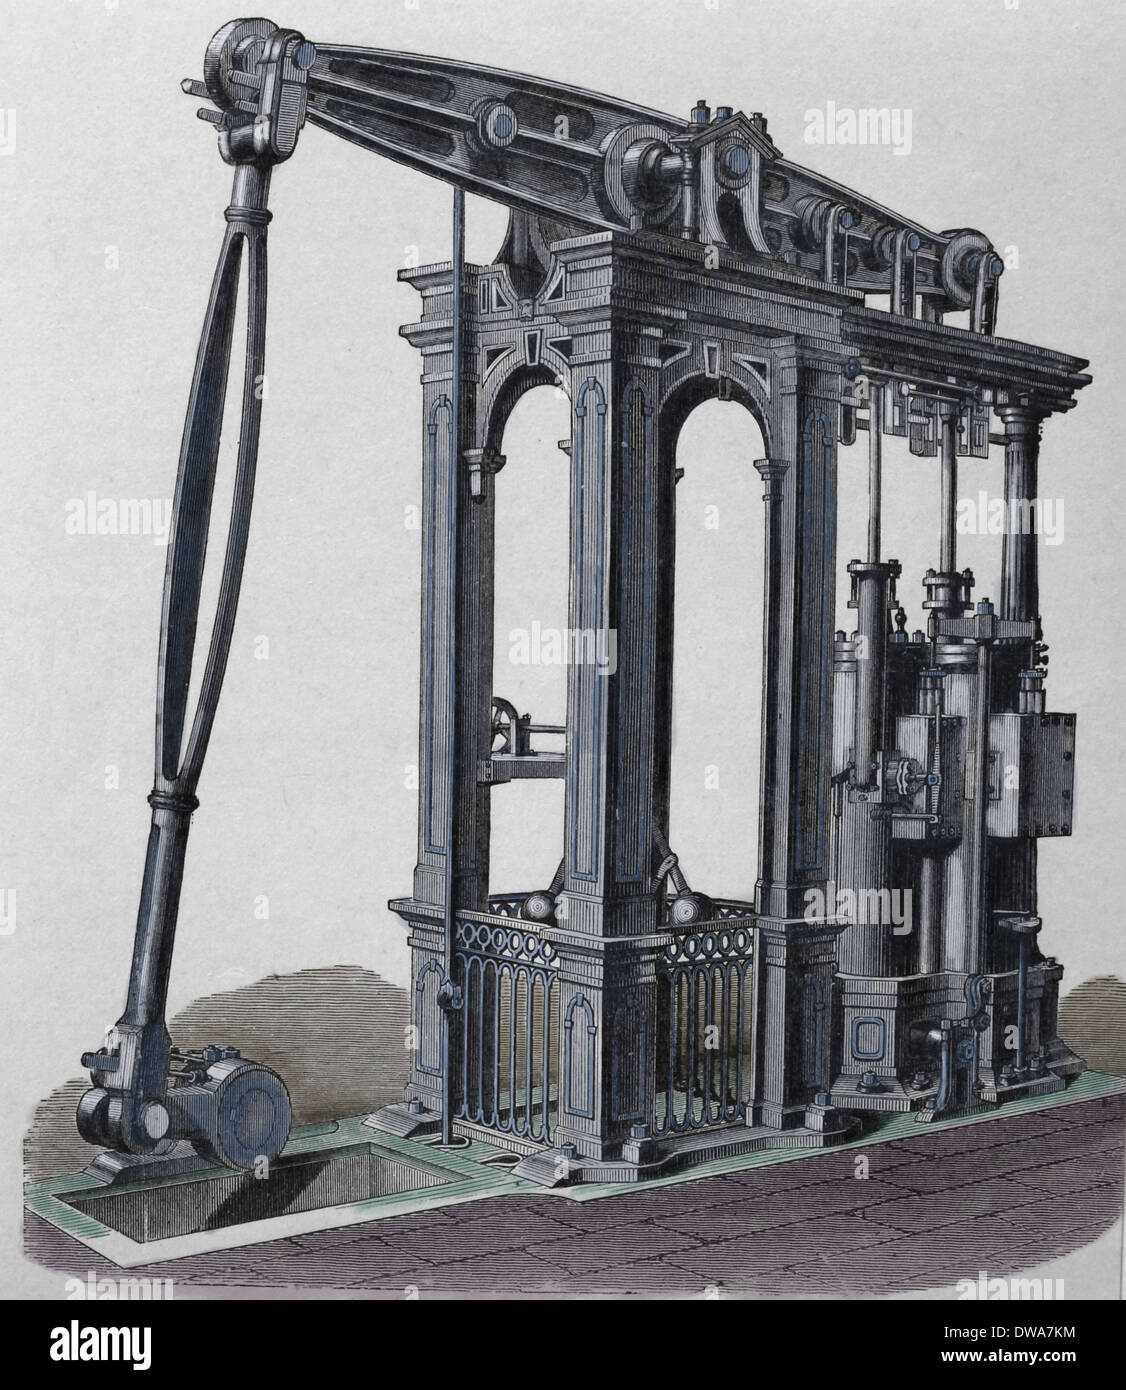 Dampfmaschine von Cornish Ingenieur Arthur Woolf (1766-1837). Kupferstich, 19. Jahrhundert. (Spätere Färbung). Stockfoto